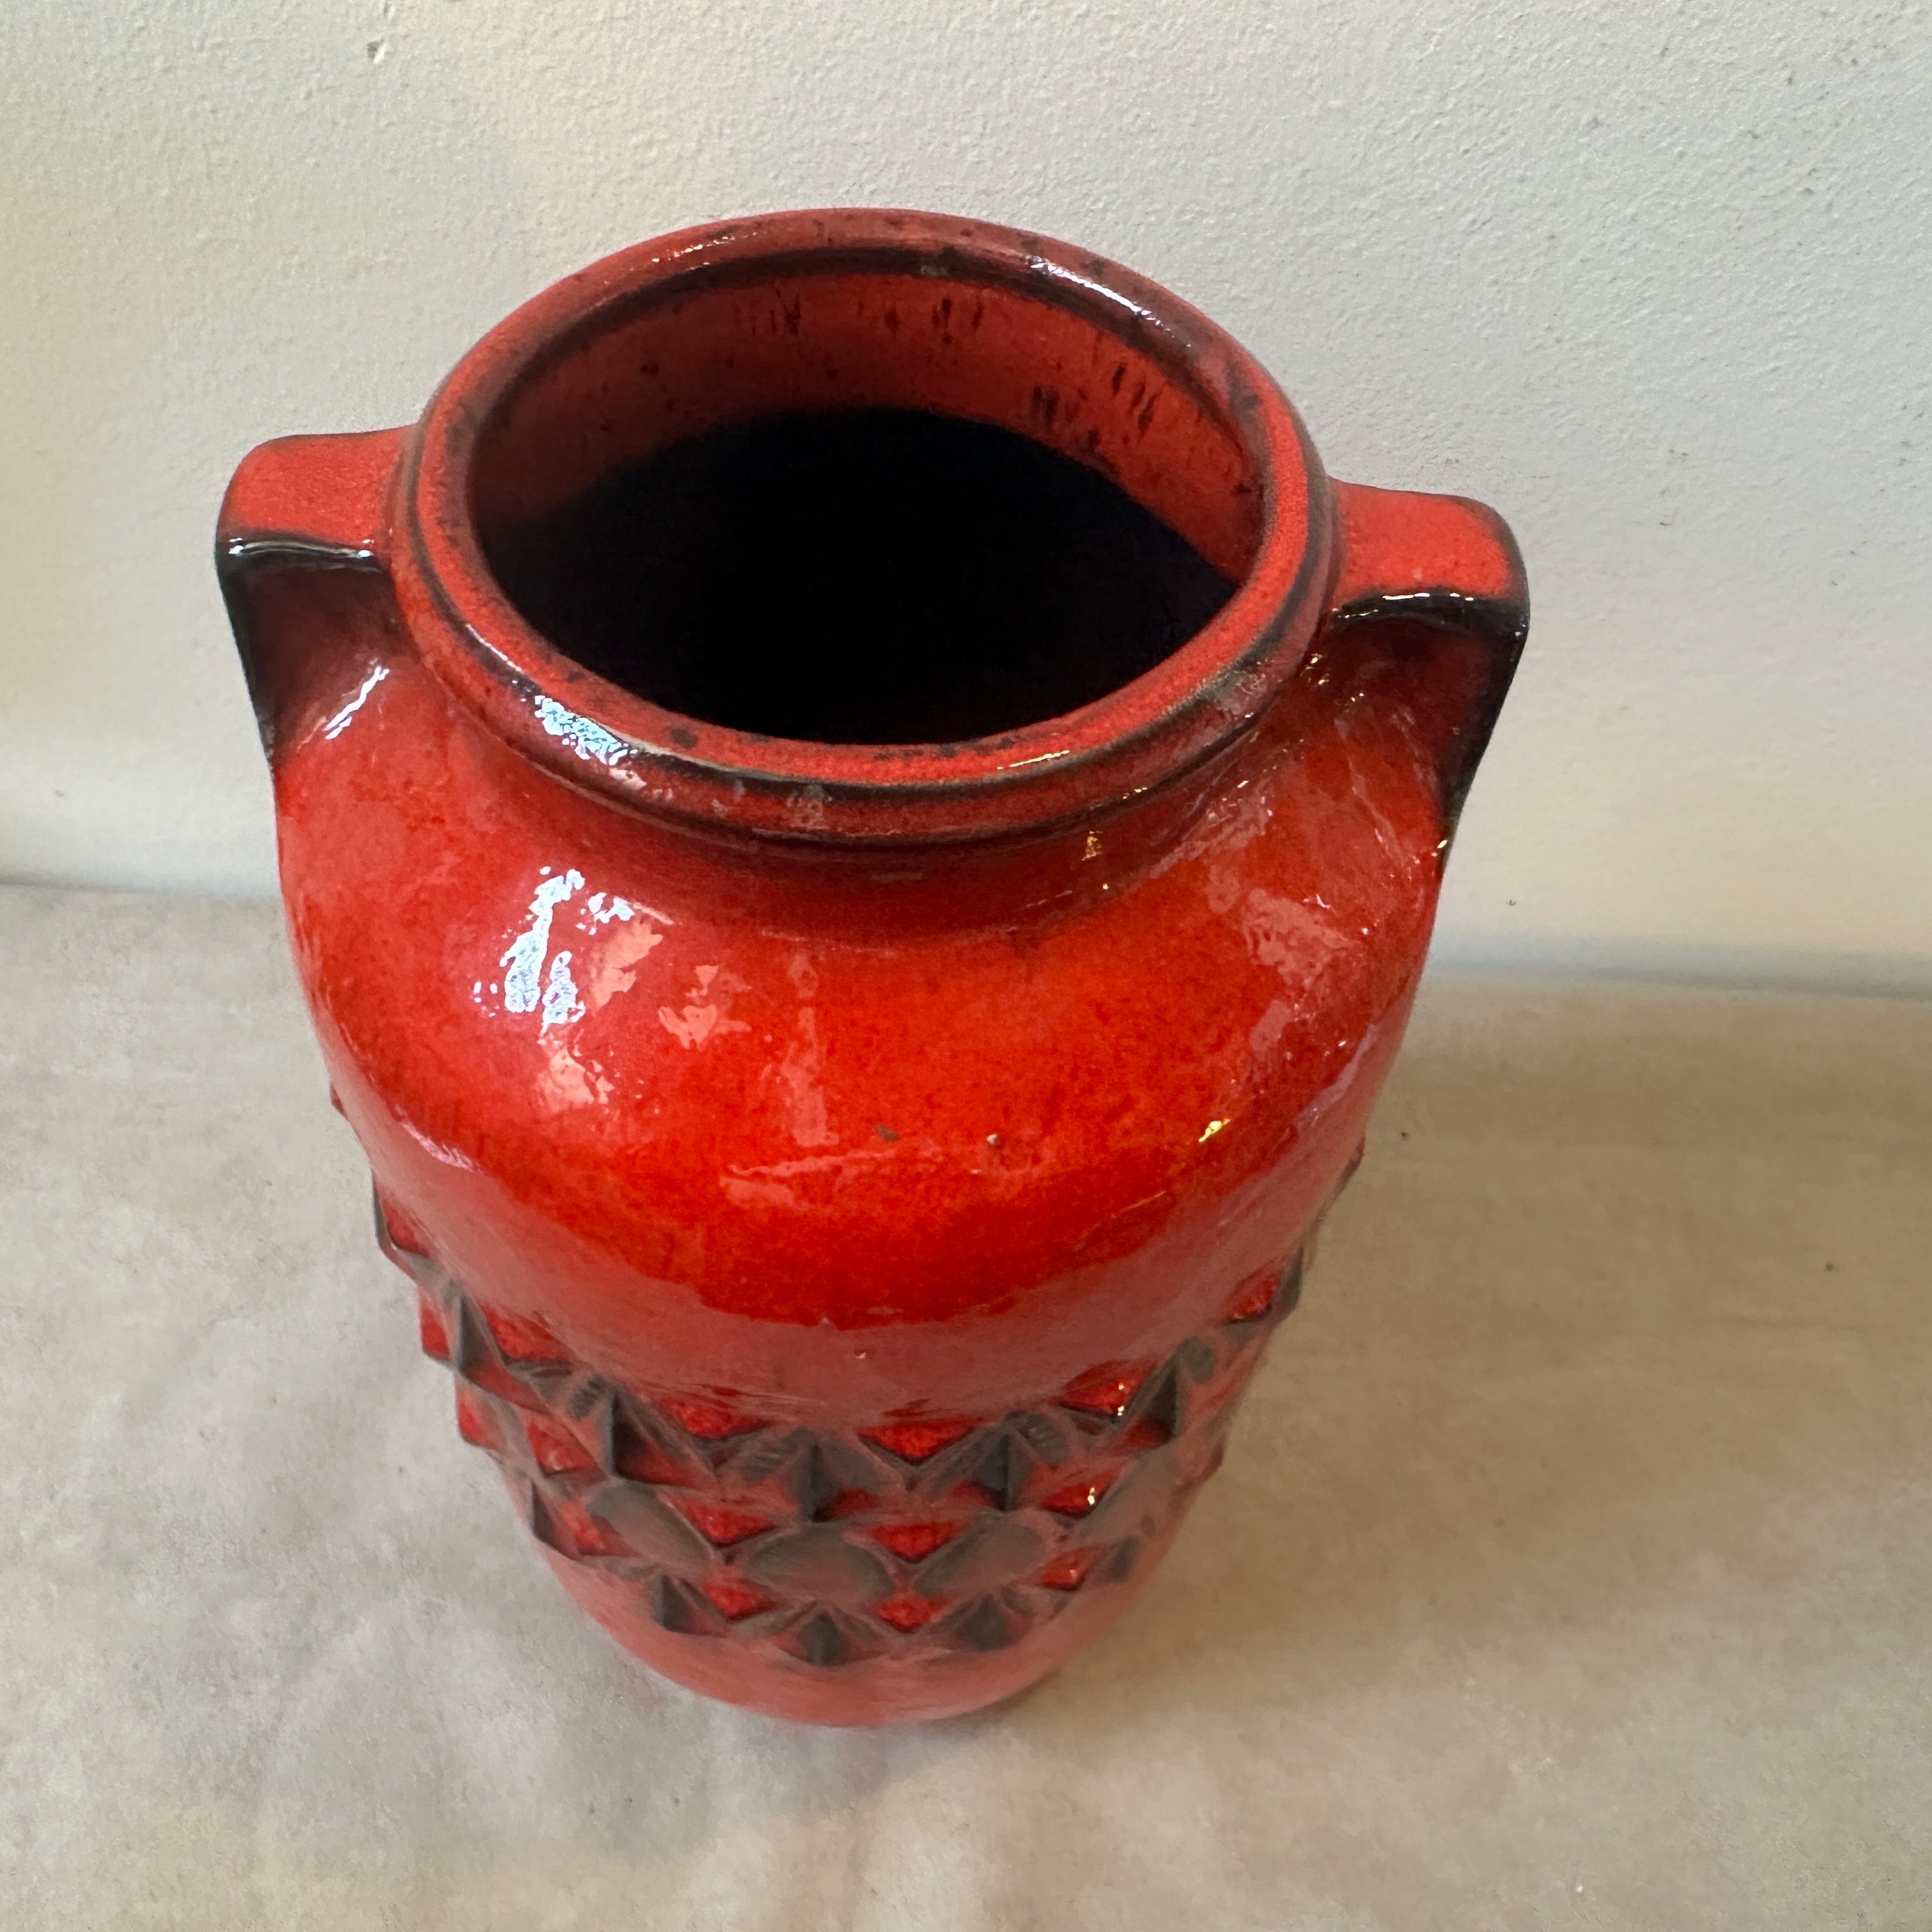 Diese deutsche Vase aus roter und schwarzer Keramik ist ein eindrucksvolles Beispiel für die Designästhetik dieser Epoche, die sich durch kräftige Farben, strukturierte Oberflächen und skulpturale Formen auszeichnet. Er dient sowohl als funktionales